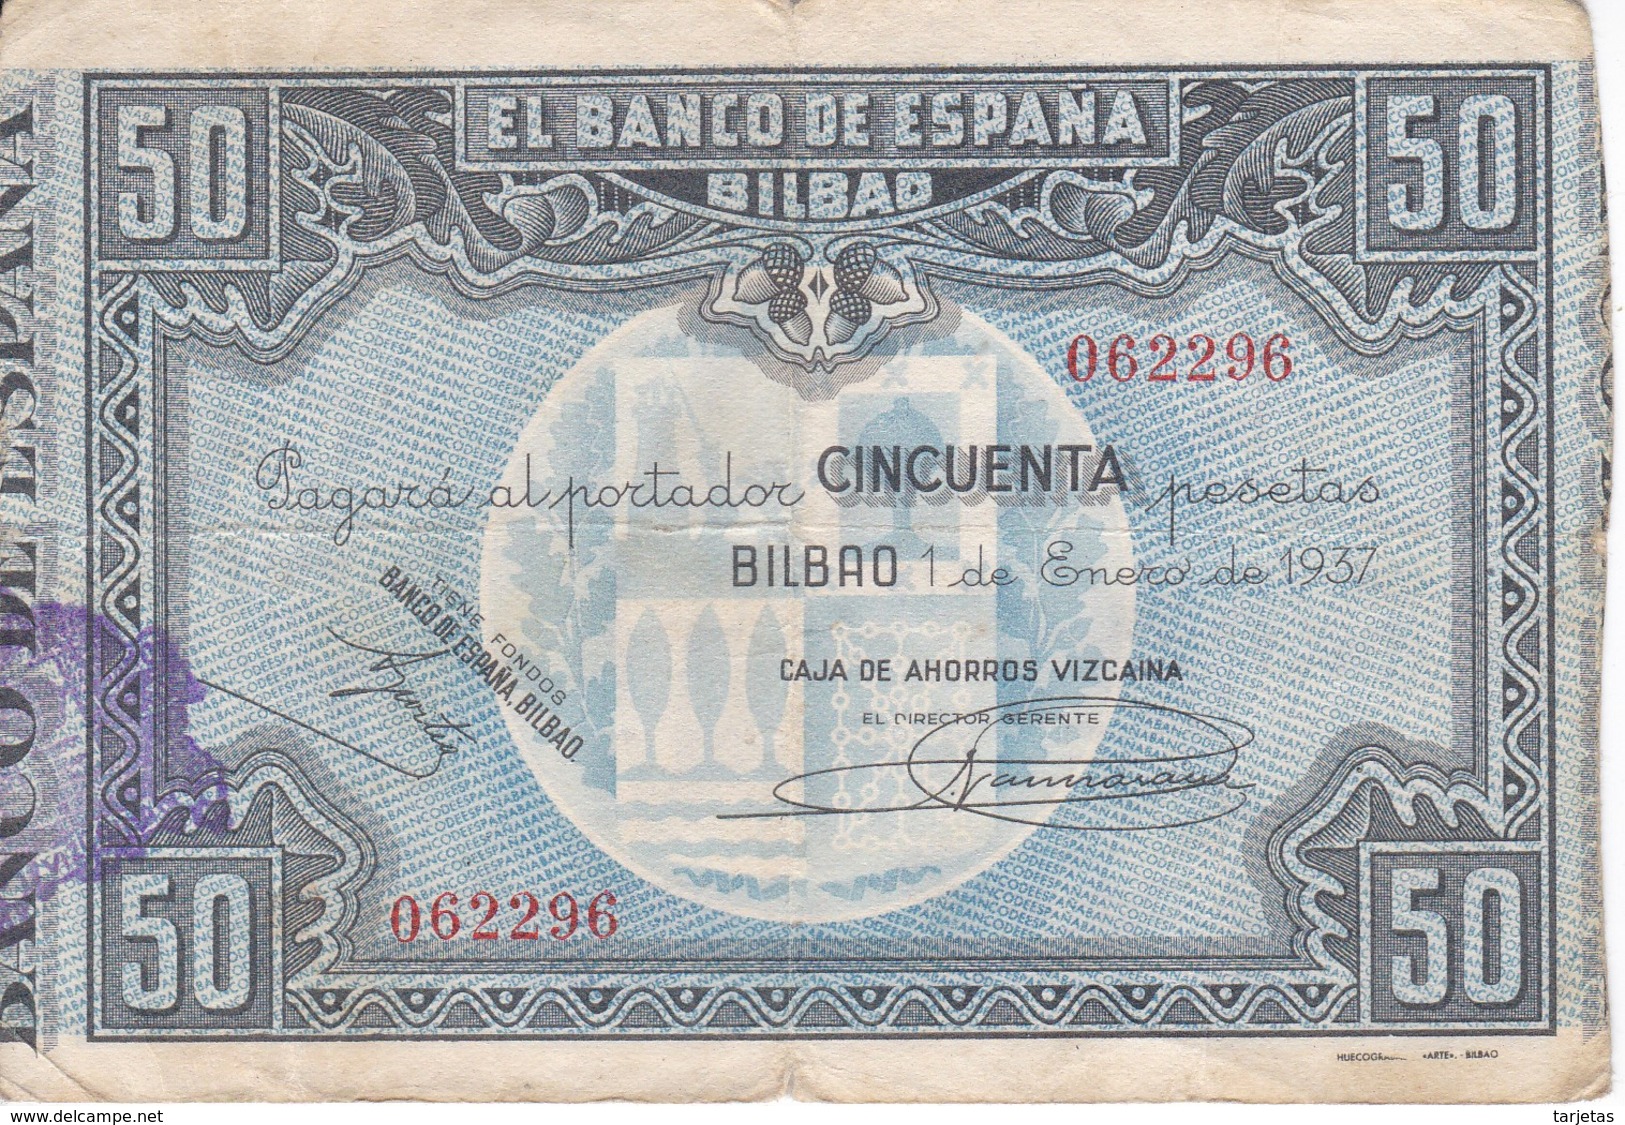 BILLETE DE ESPAÑA DE 50 PTAS DEL BANCO DE ESPAÑA-BILBAO DEL AÑO 1937 (CAJA AHORROS VIZCAINA) - 50 Pesetas